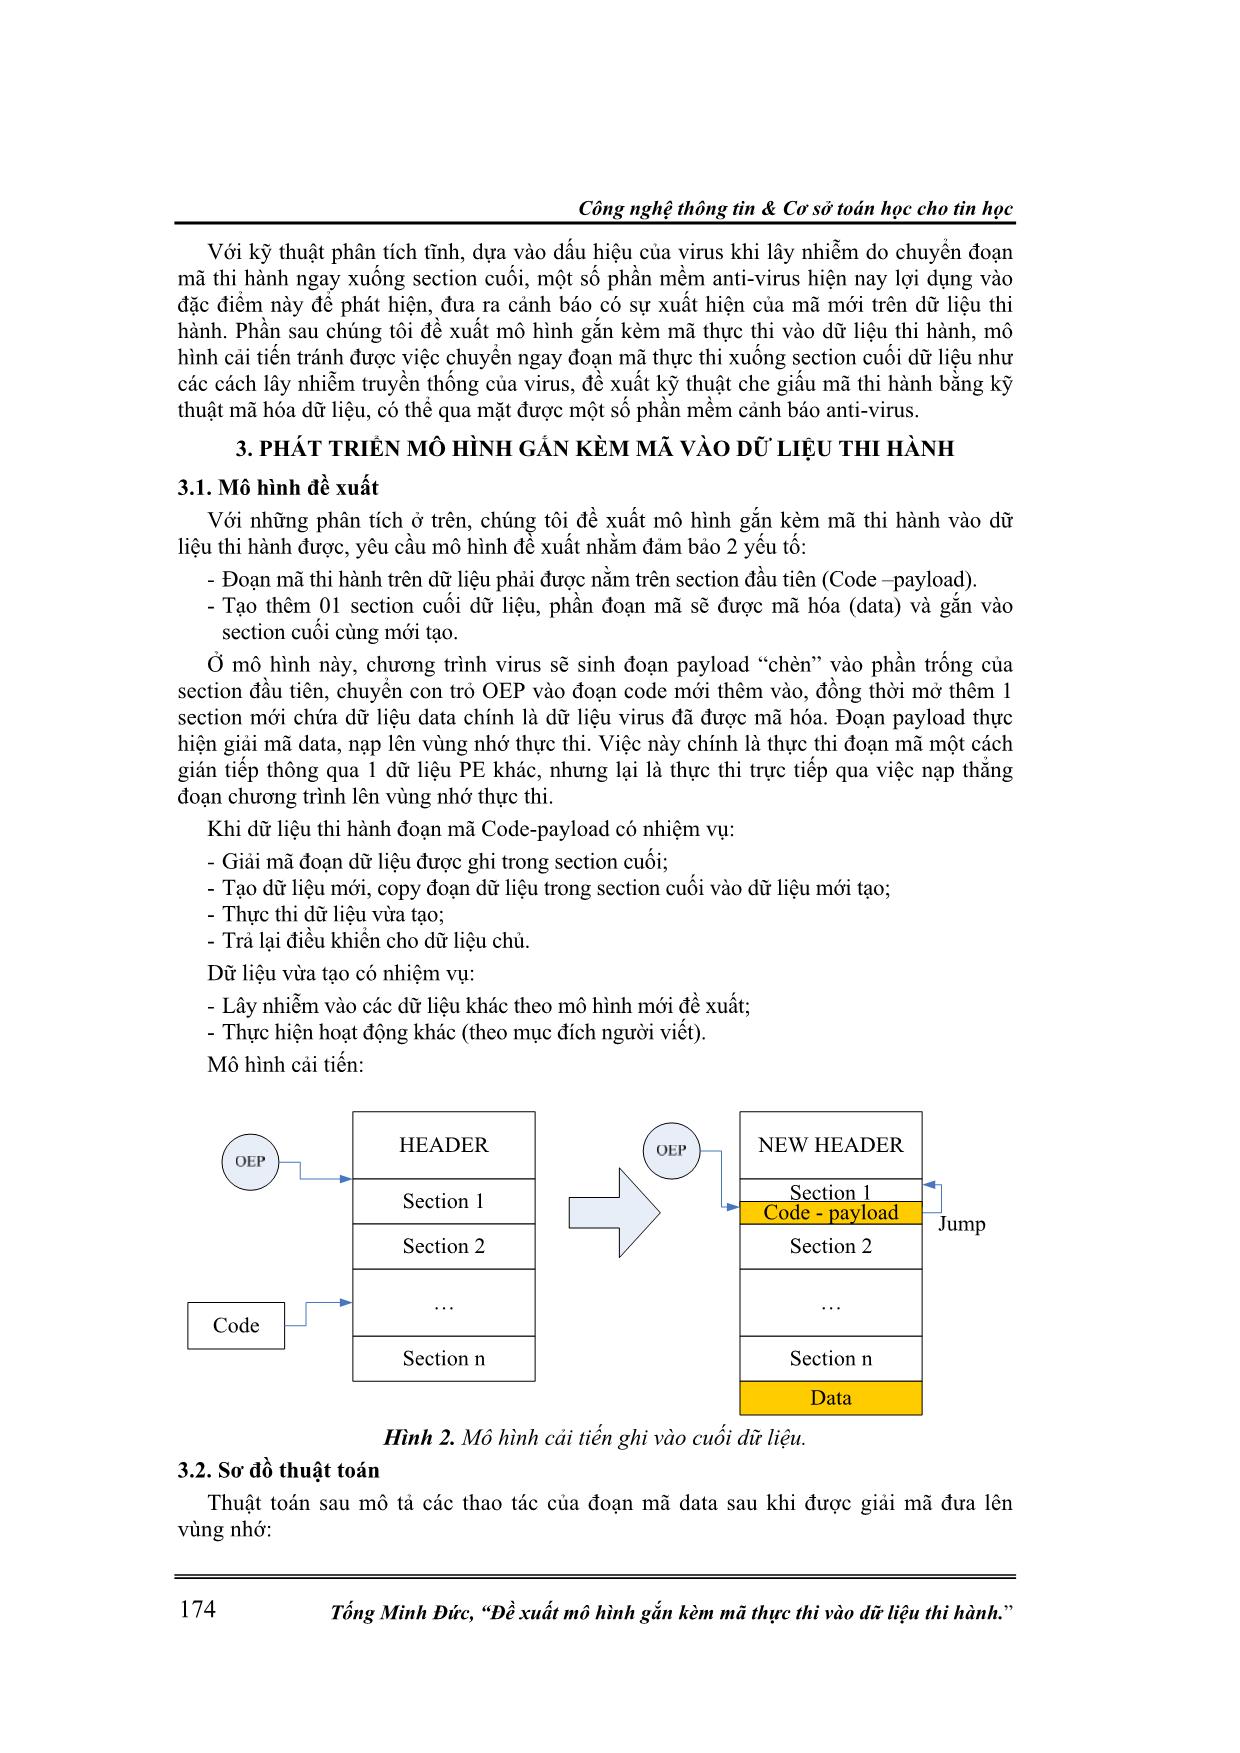 Đề xuất mô hình gắn kèm mã thực thi vào dữ liệu thi hành trang 4